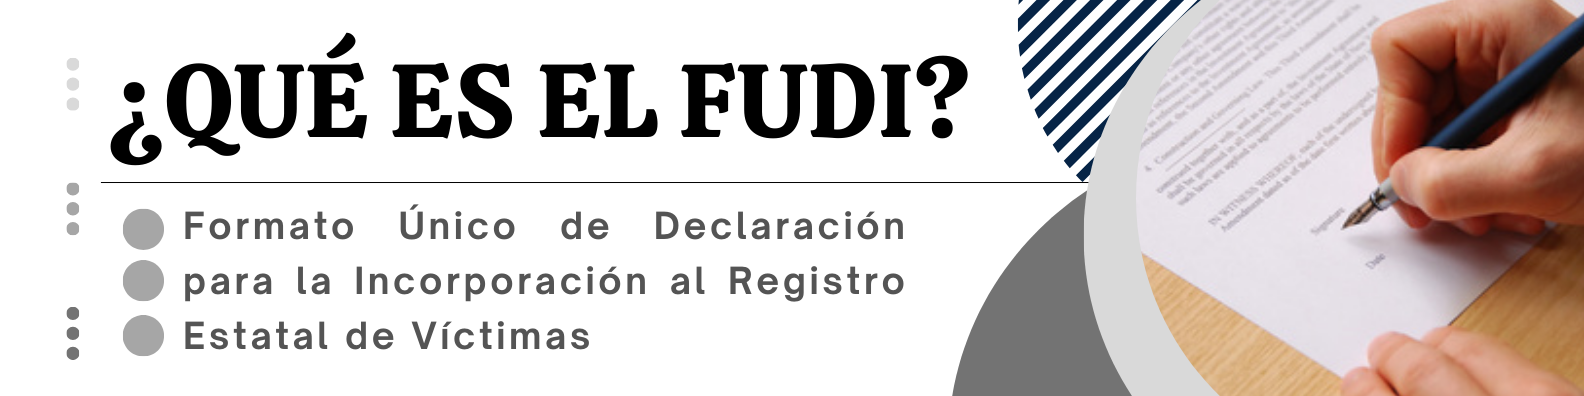 ¿ Qué es el FUDI?